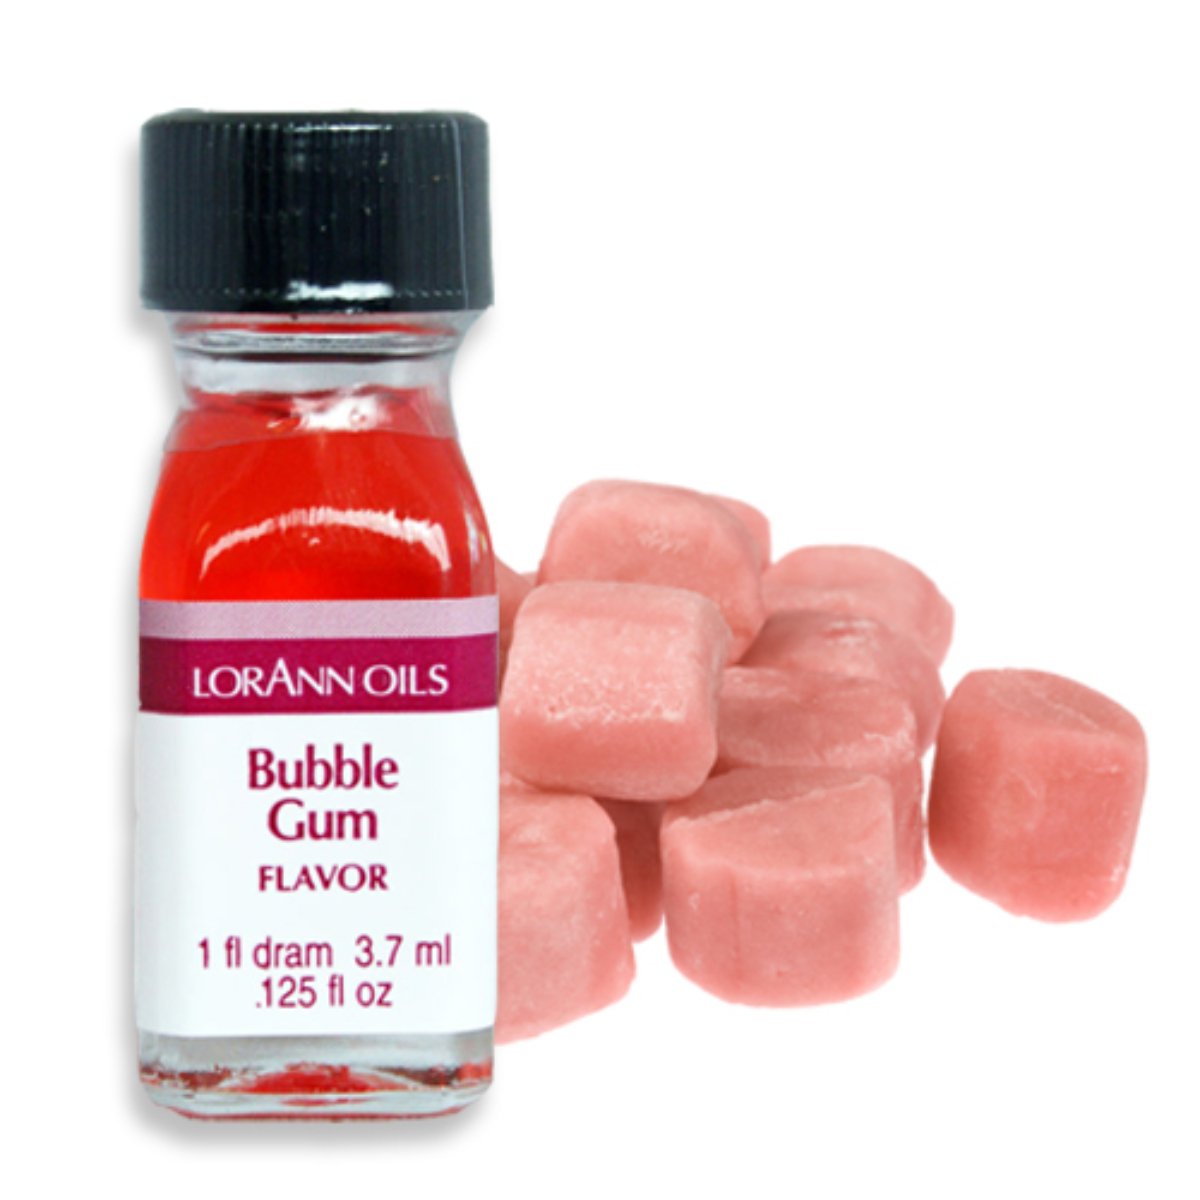 Bubble Gum Flavor 1 Dram - Bake Supply Plus